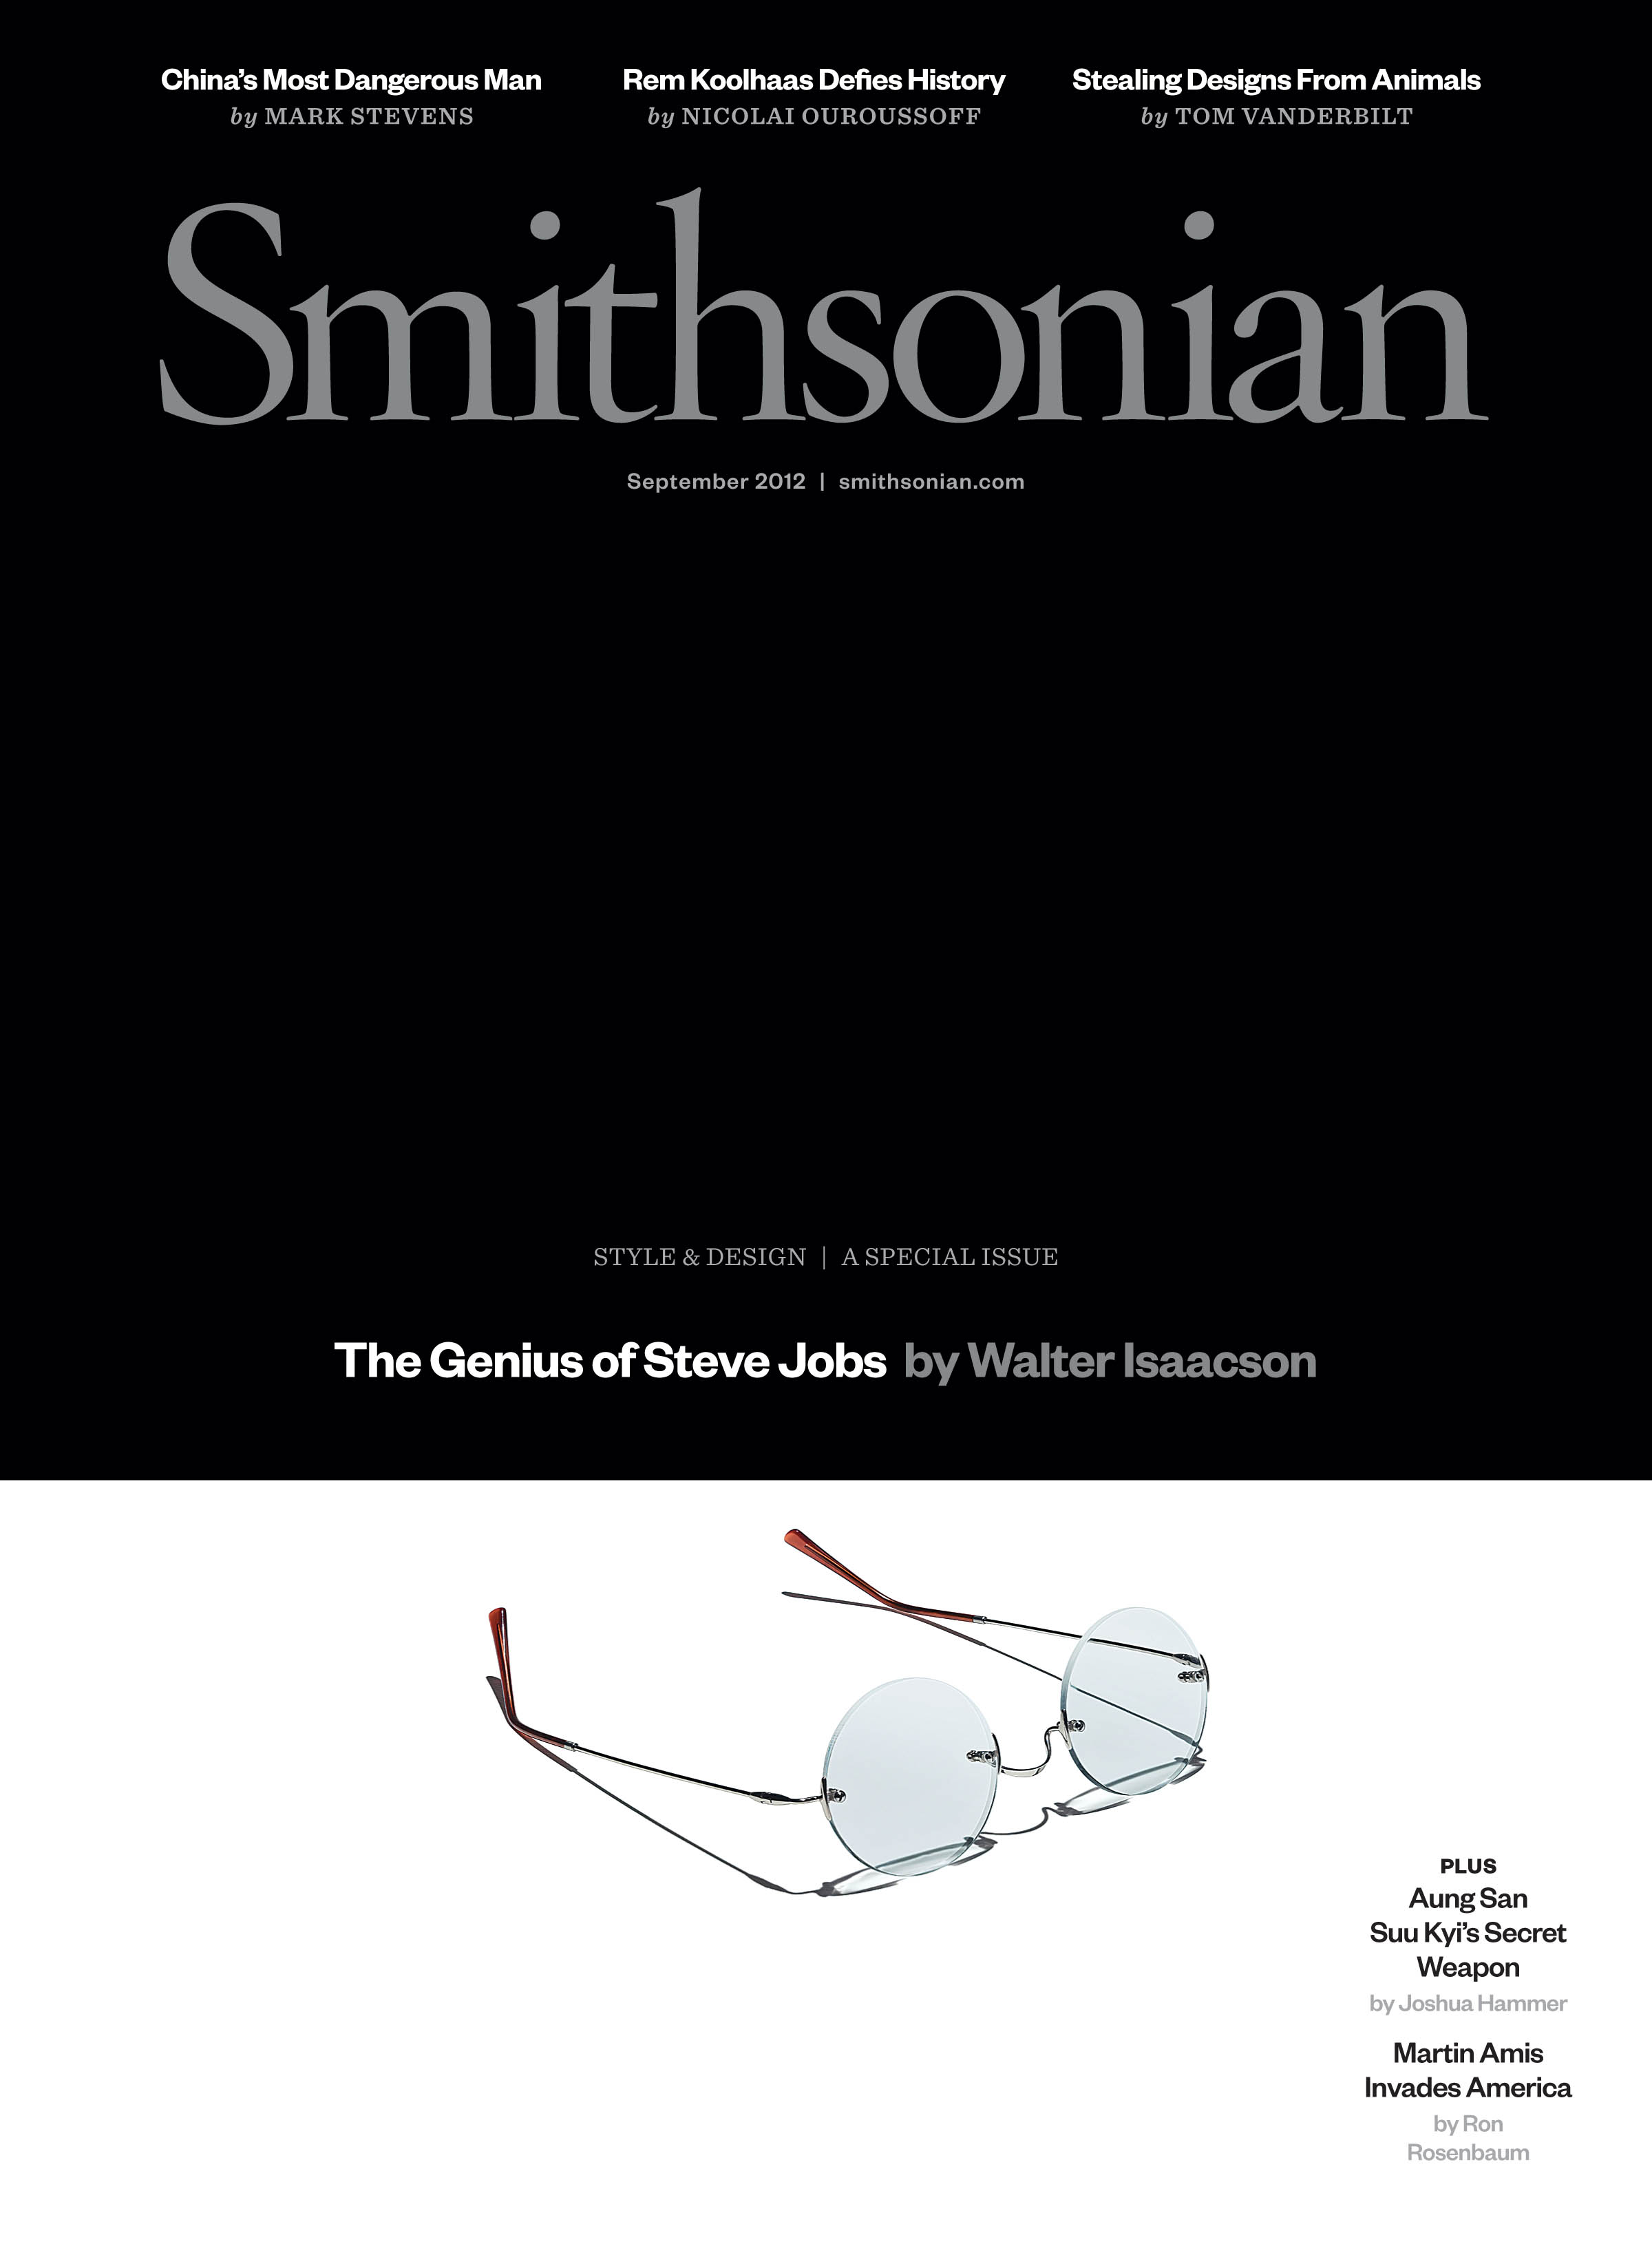 Smithsonian-September 2012: "The Genius Steve Jobs"